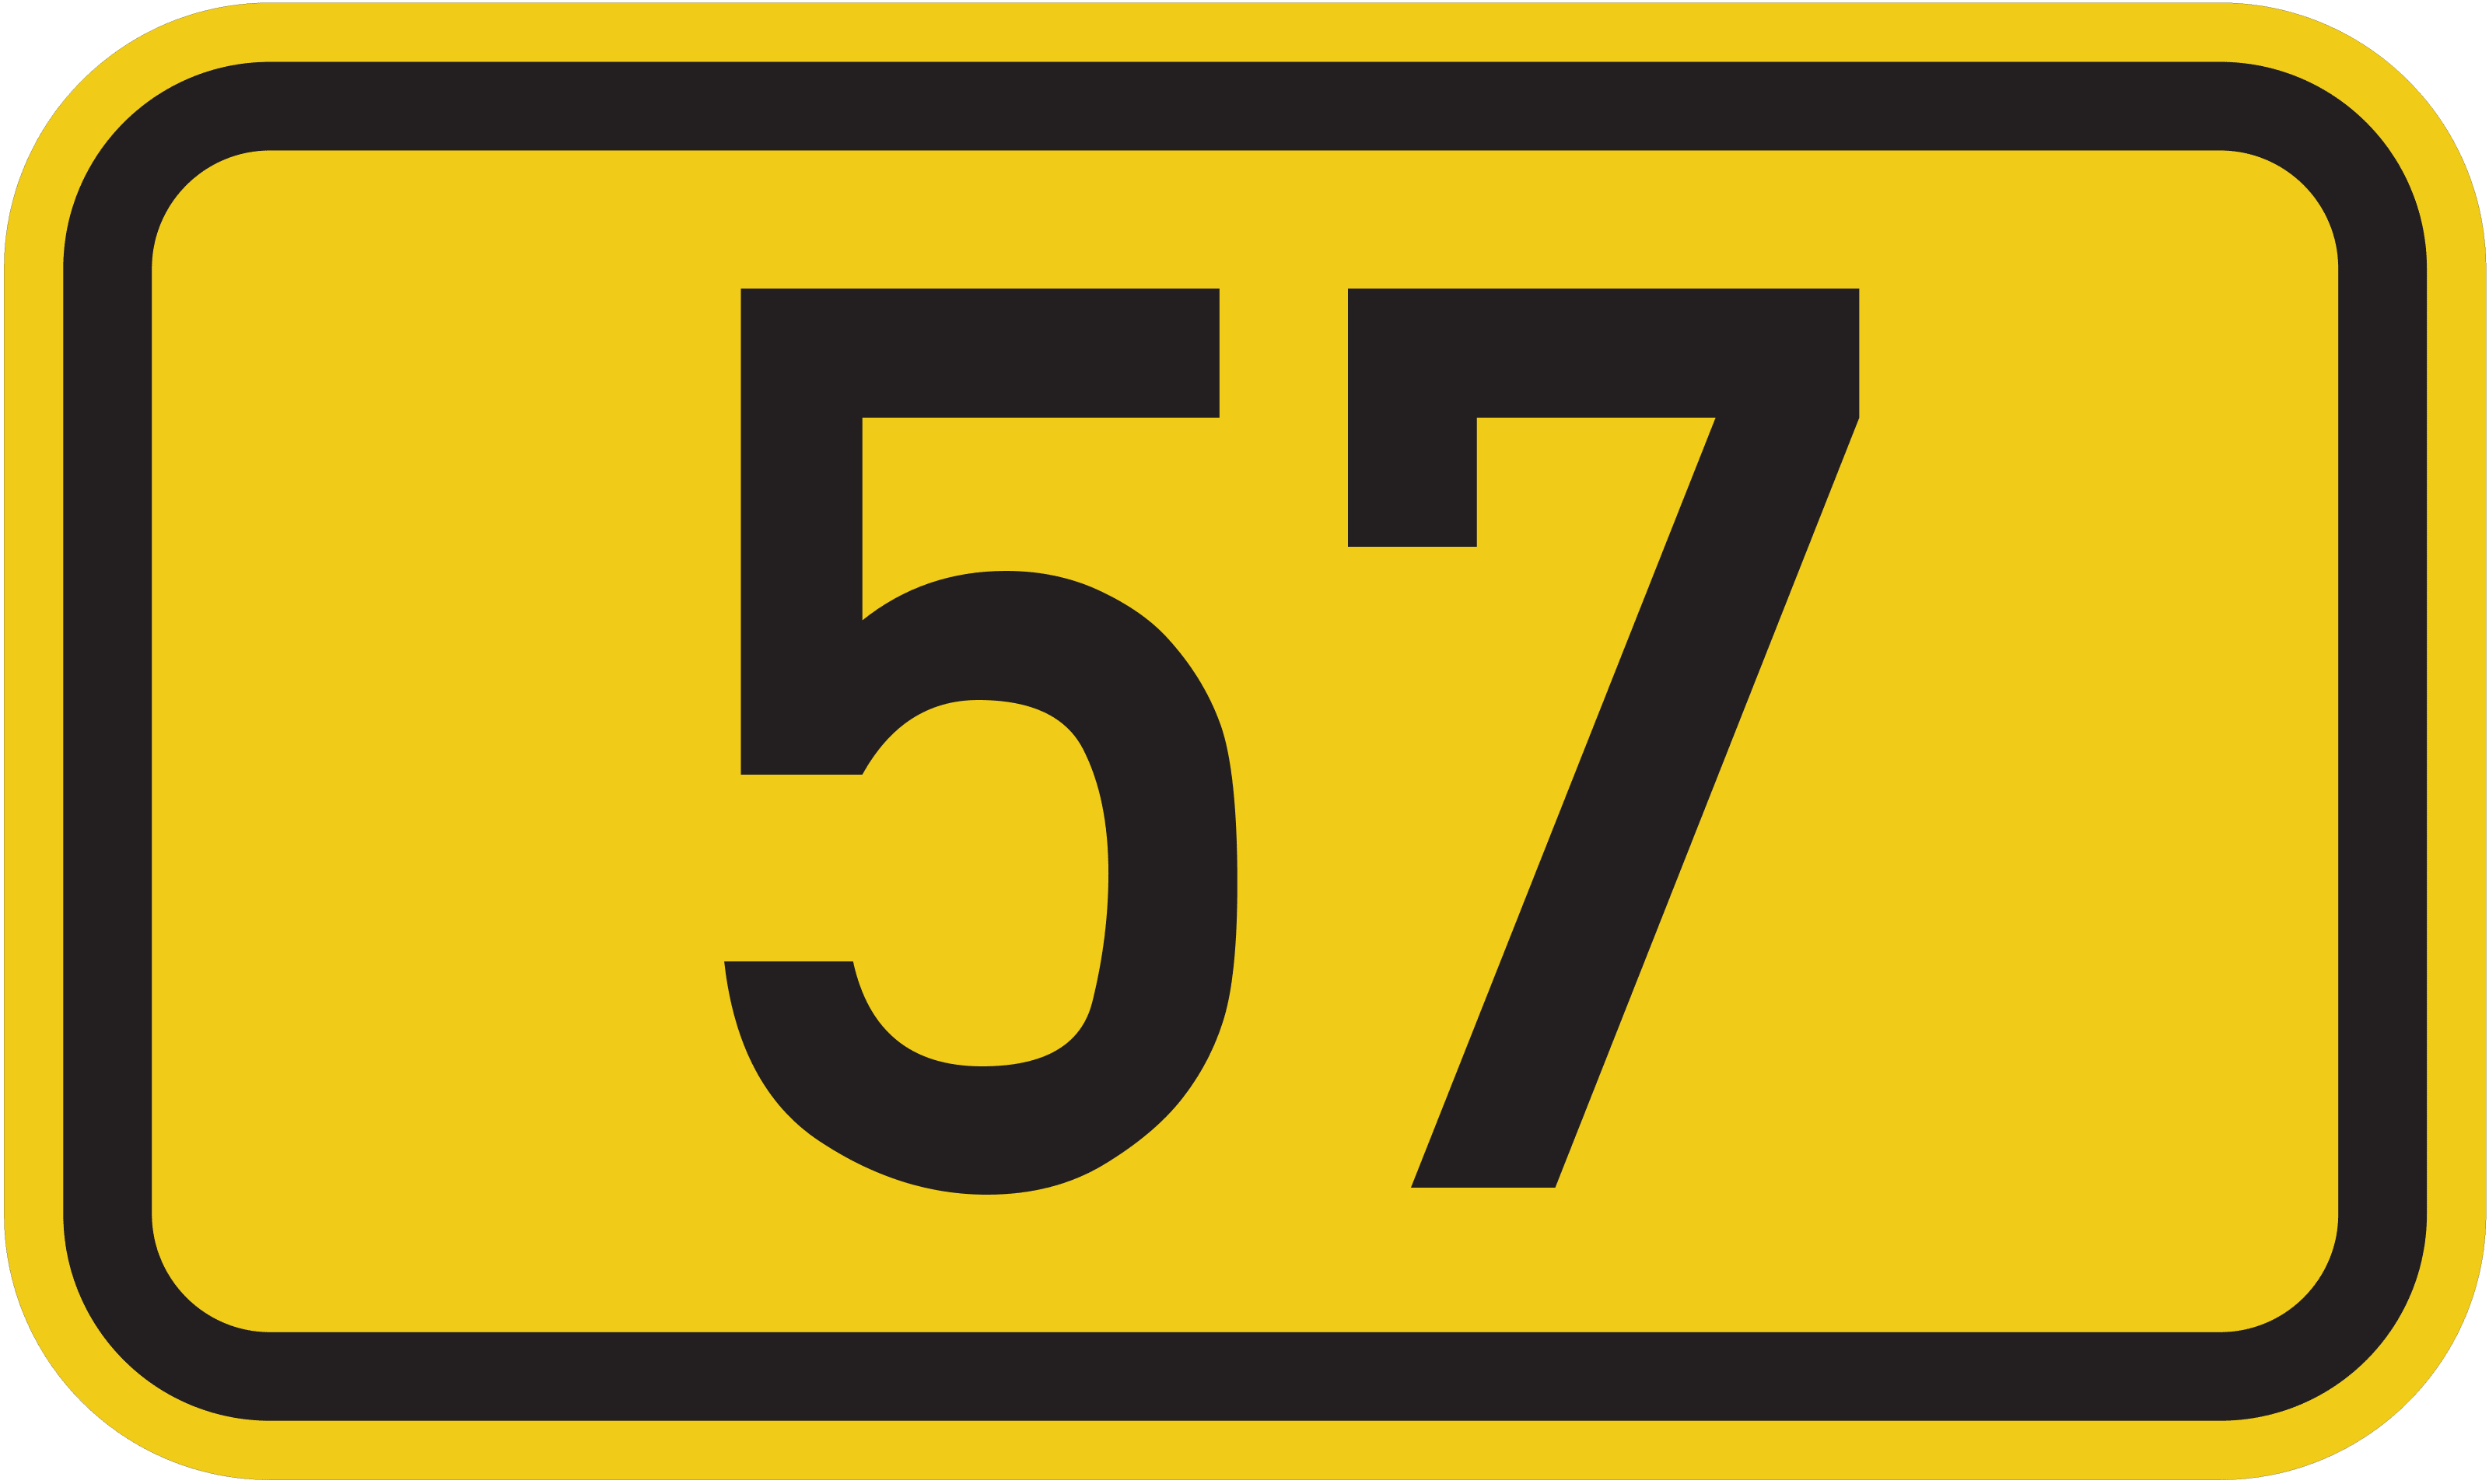 Bundesstraße B 57